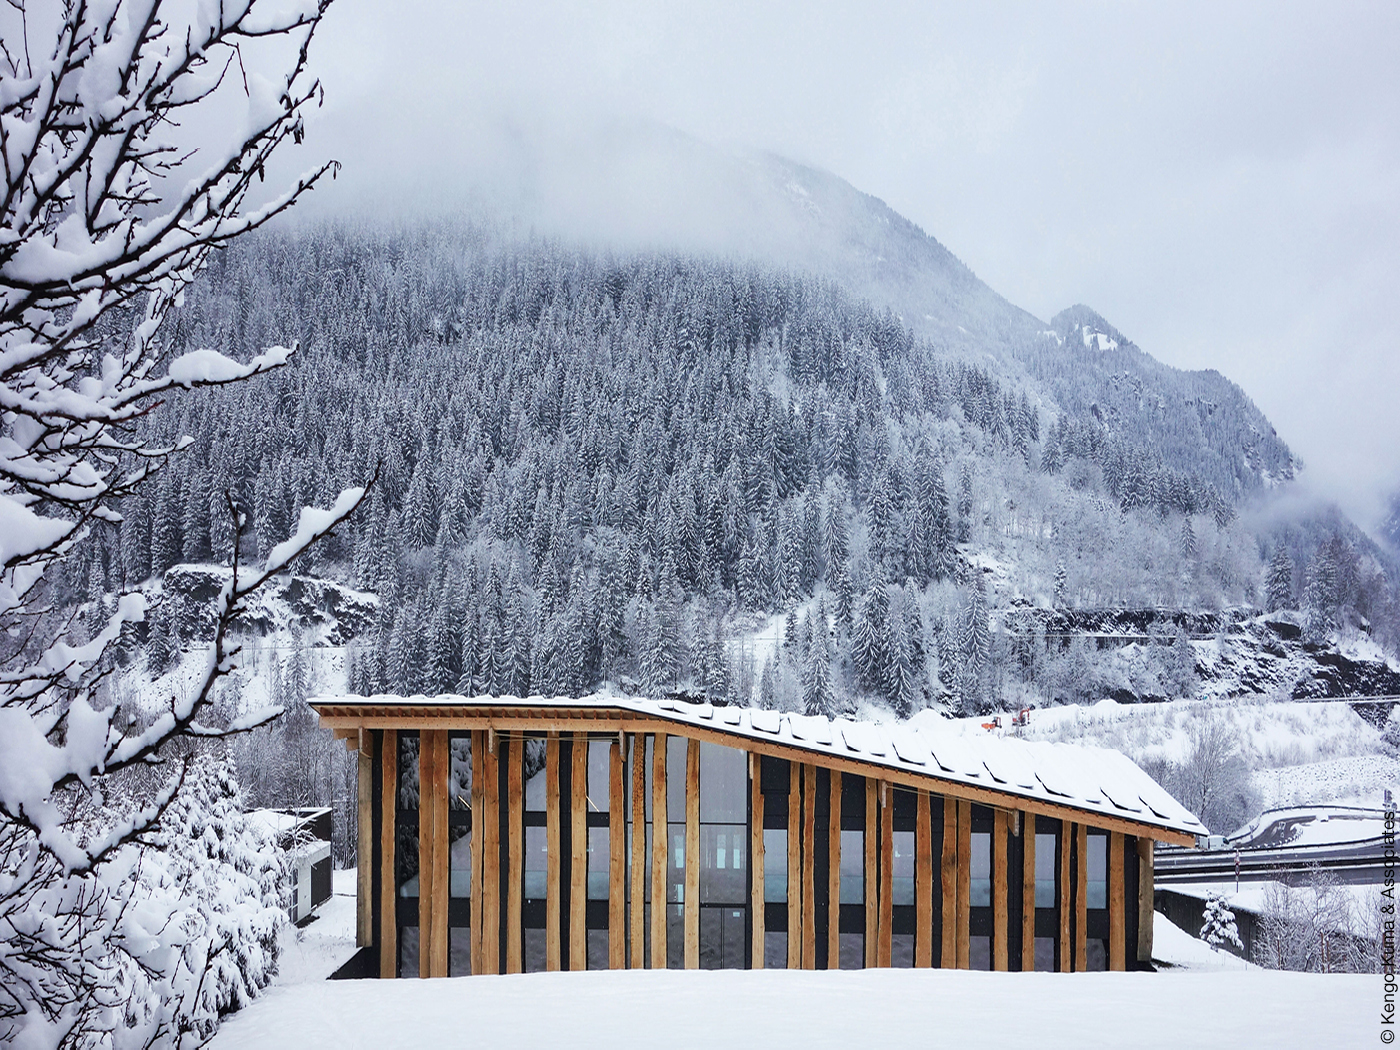 Haus mit Fassade aus Glas und Holz inmitten eines verschneiten Waldes